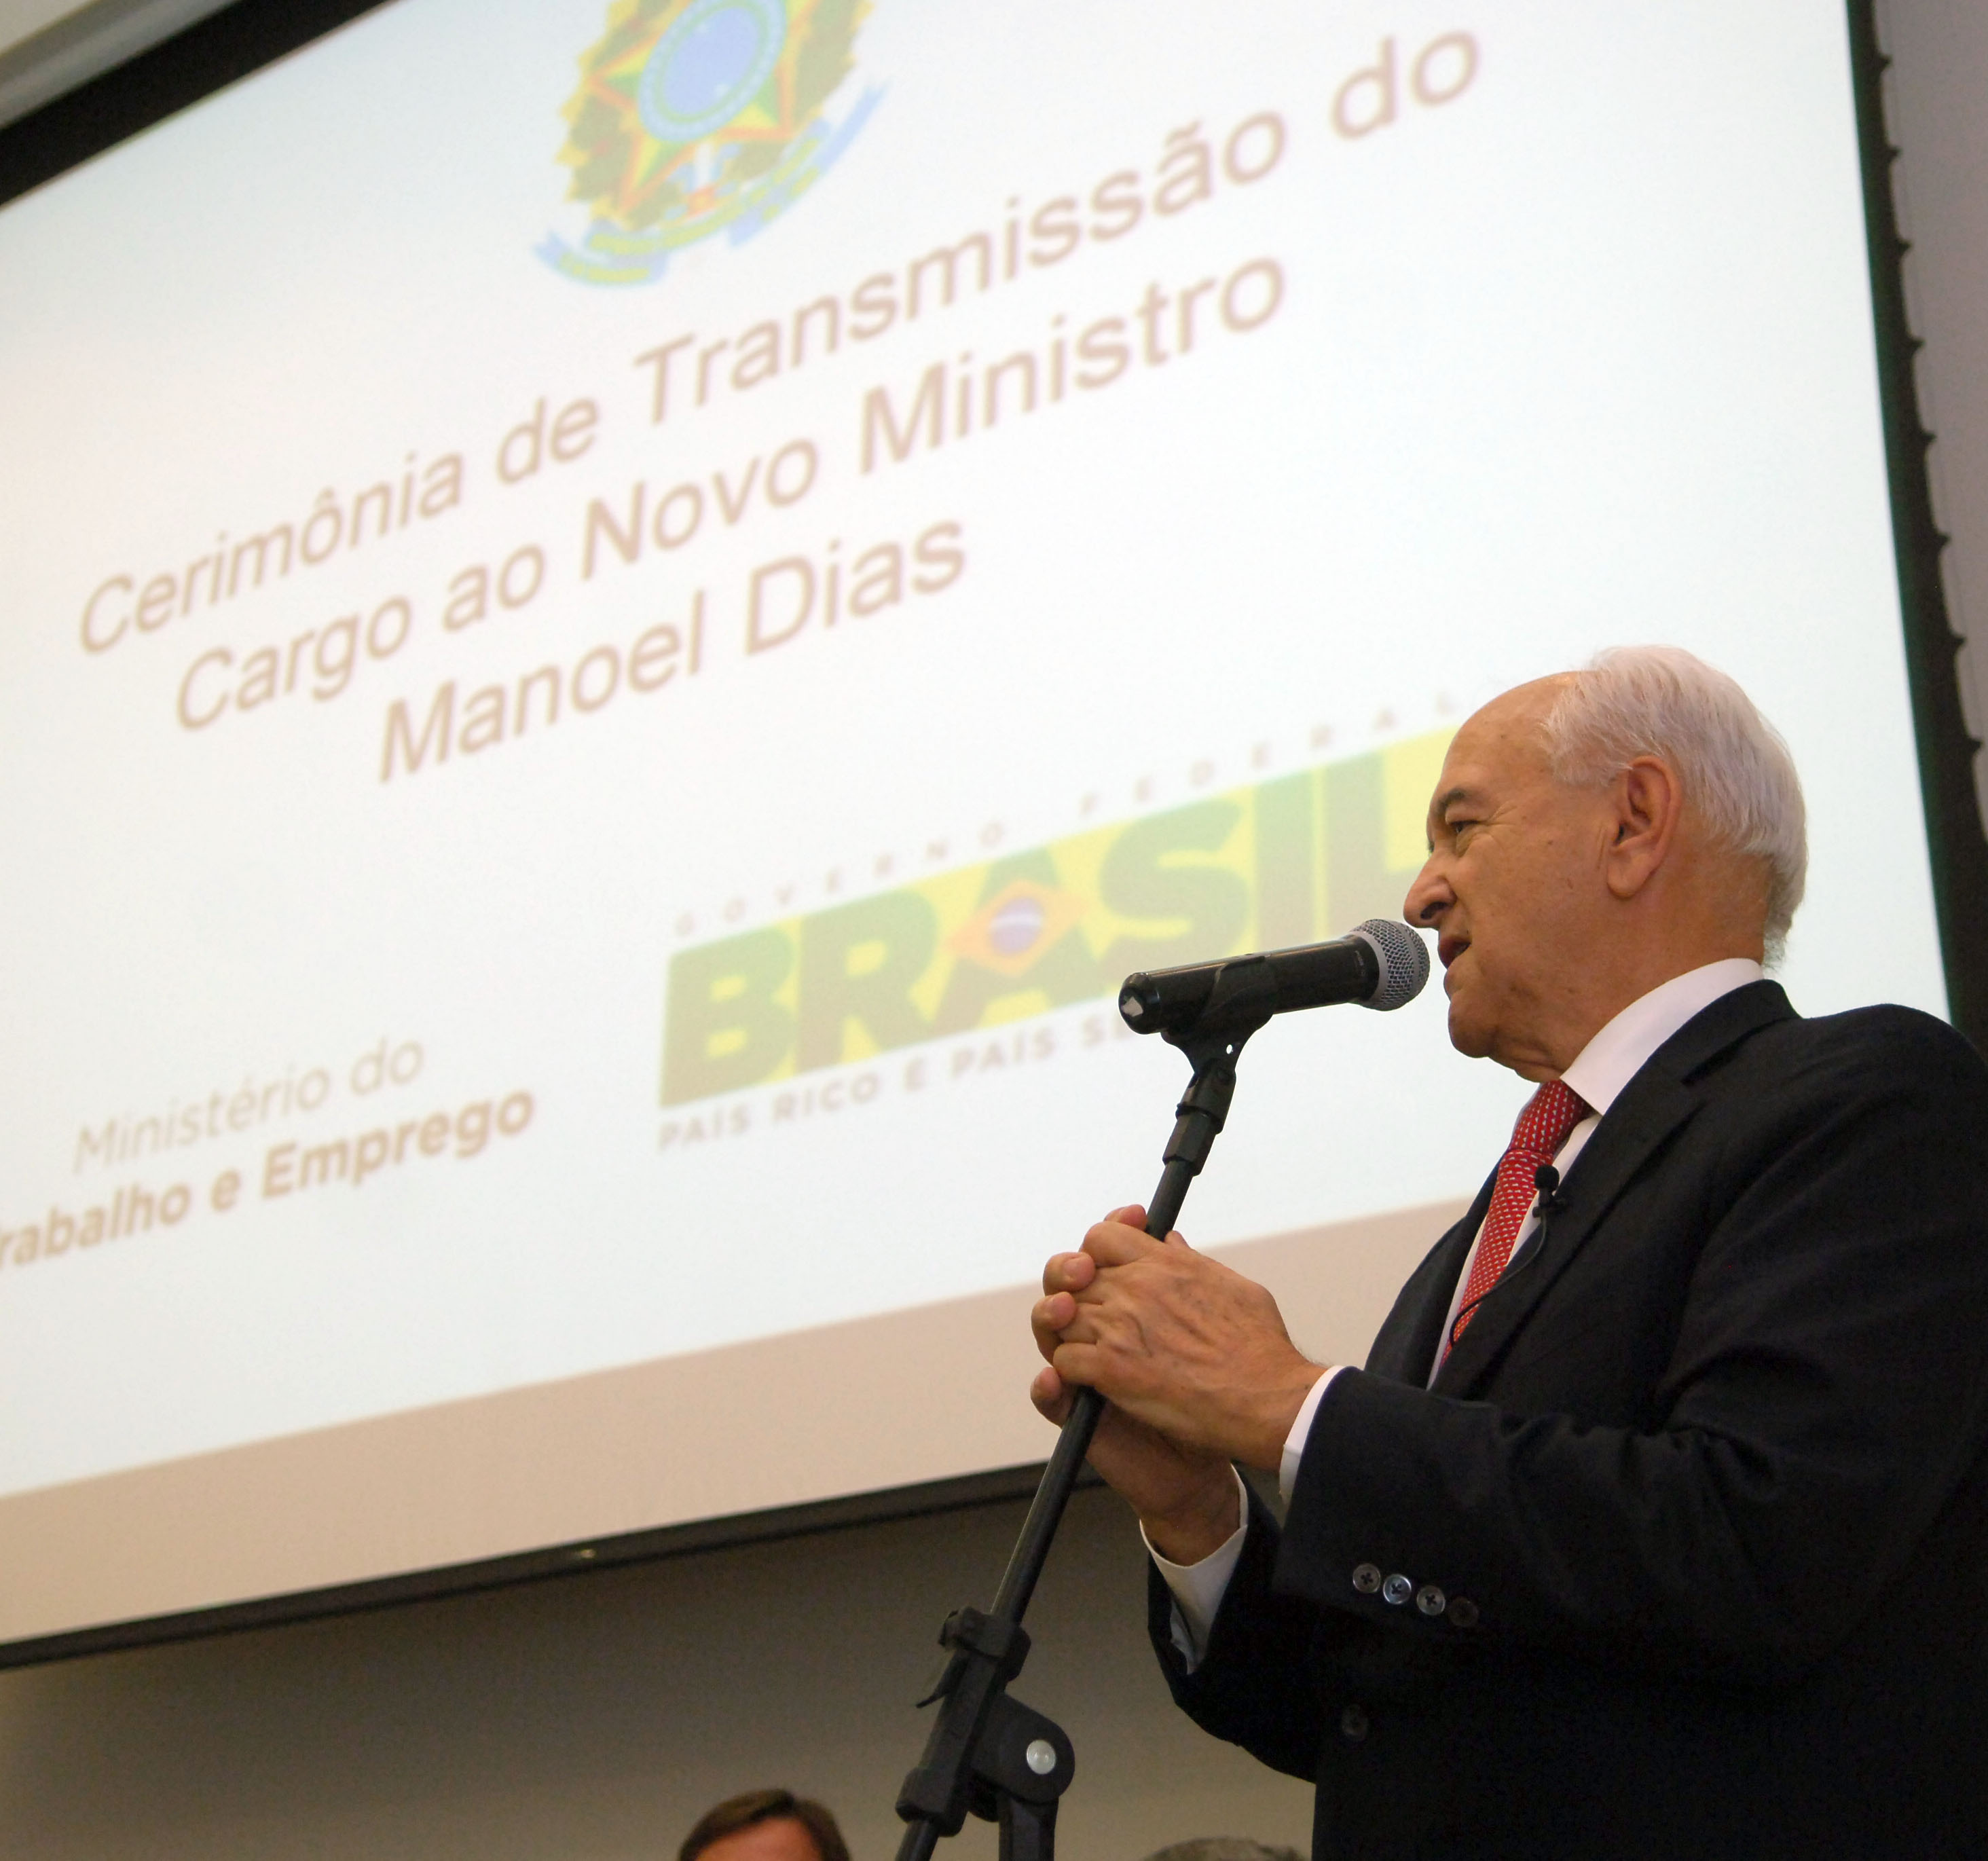 Ministro do trabalho Manoel Dias durante transmissao de cargo.